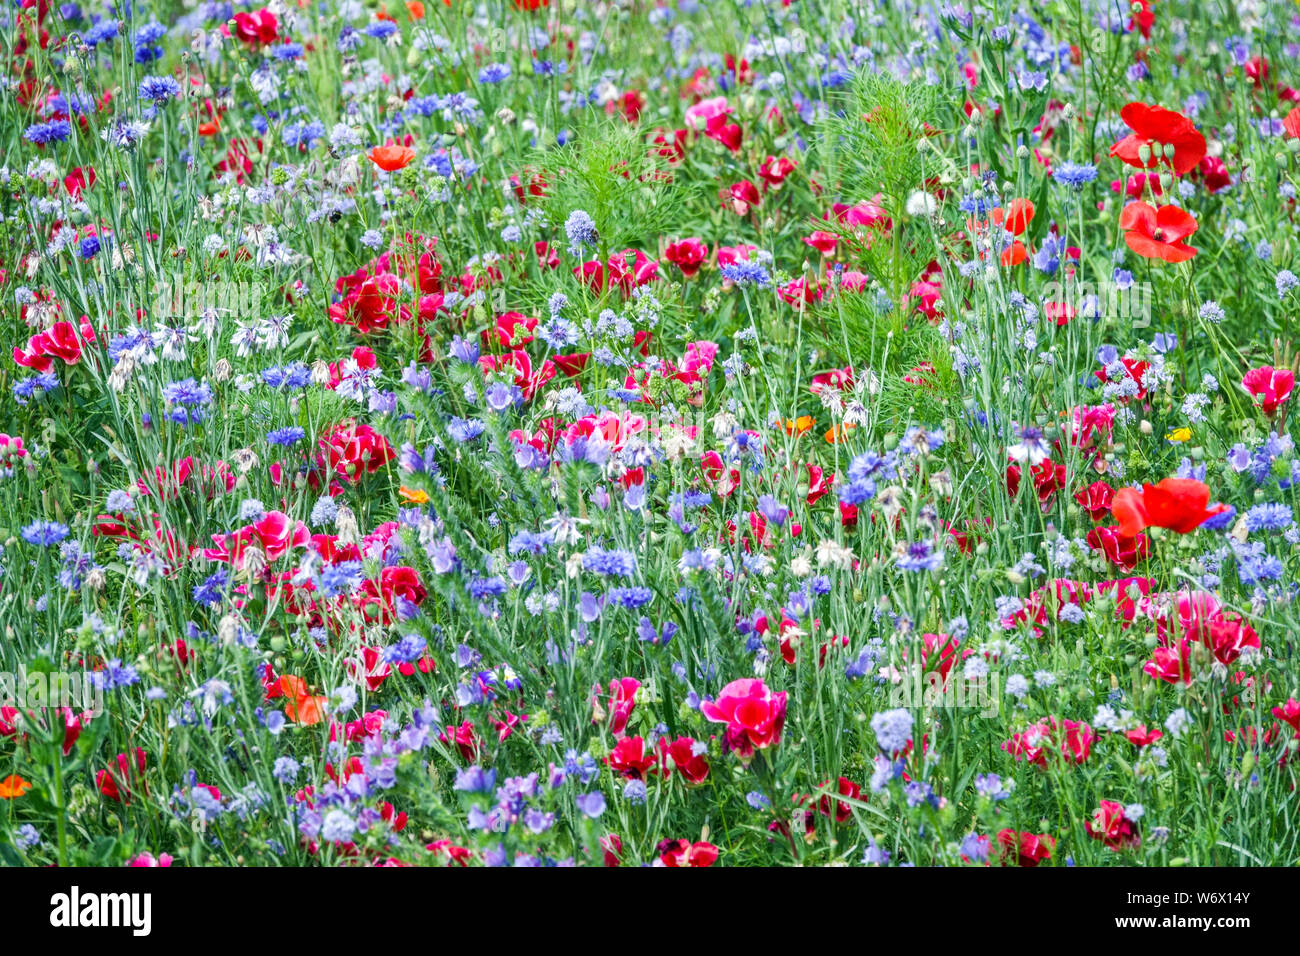 Plantes annuelles pour l'ensemencement direct dans les lits bleu-rouge et les prairies, adapté aux bandes de mélanges de fleurs colorées Centaurea Clarcia Poppies Godetia Banque D'Images